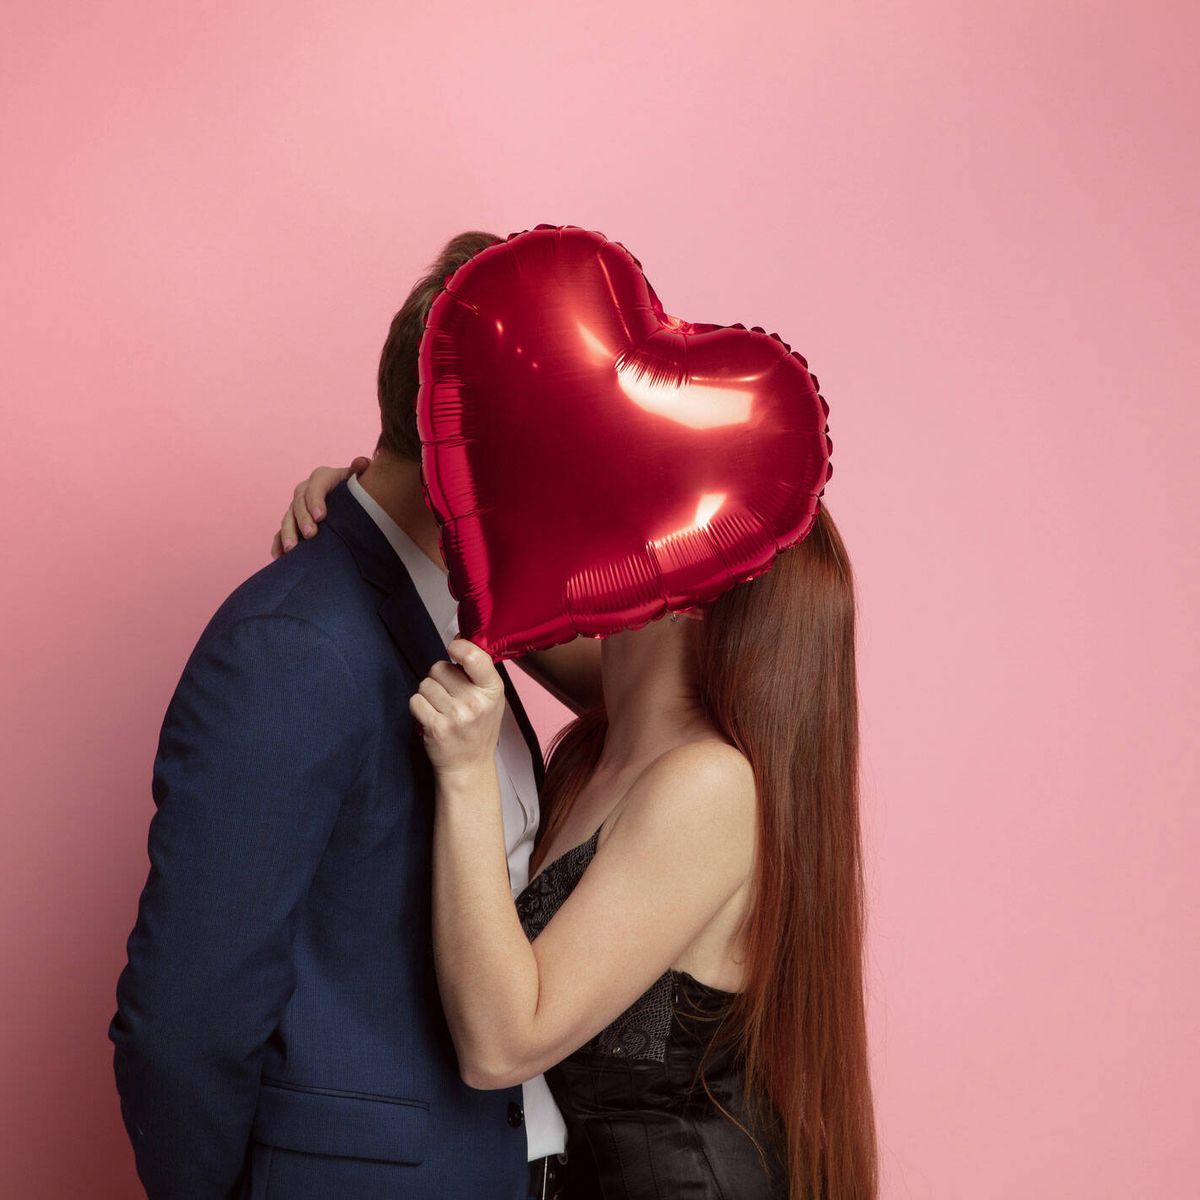 Inmundo Persona australiana desmayarse 14 regalos de San Valentín para hombre que emocionarán a tu pareja